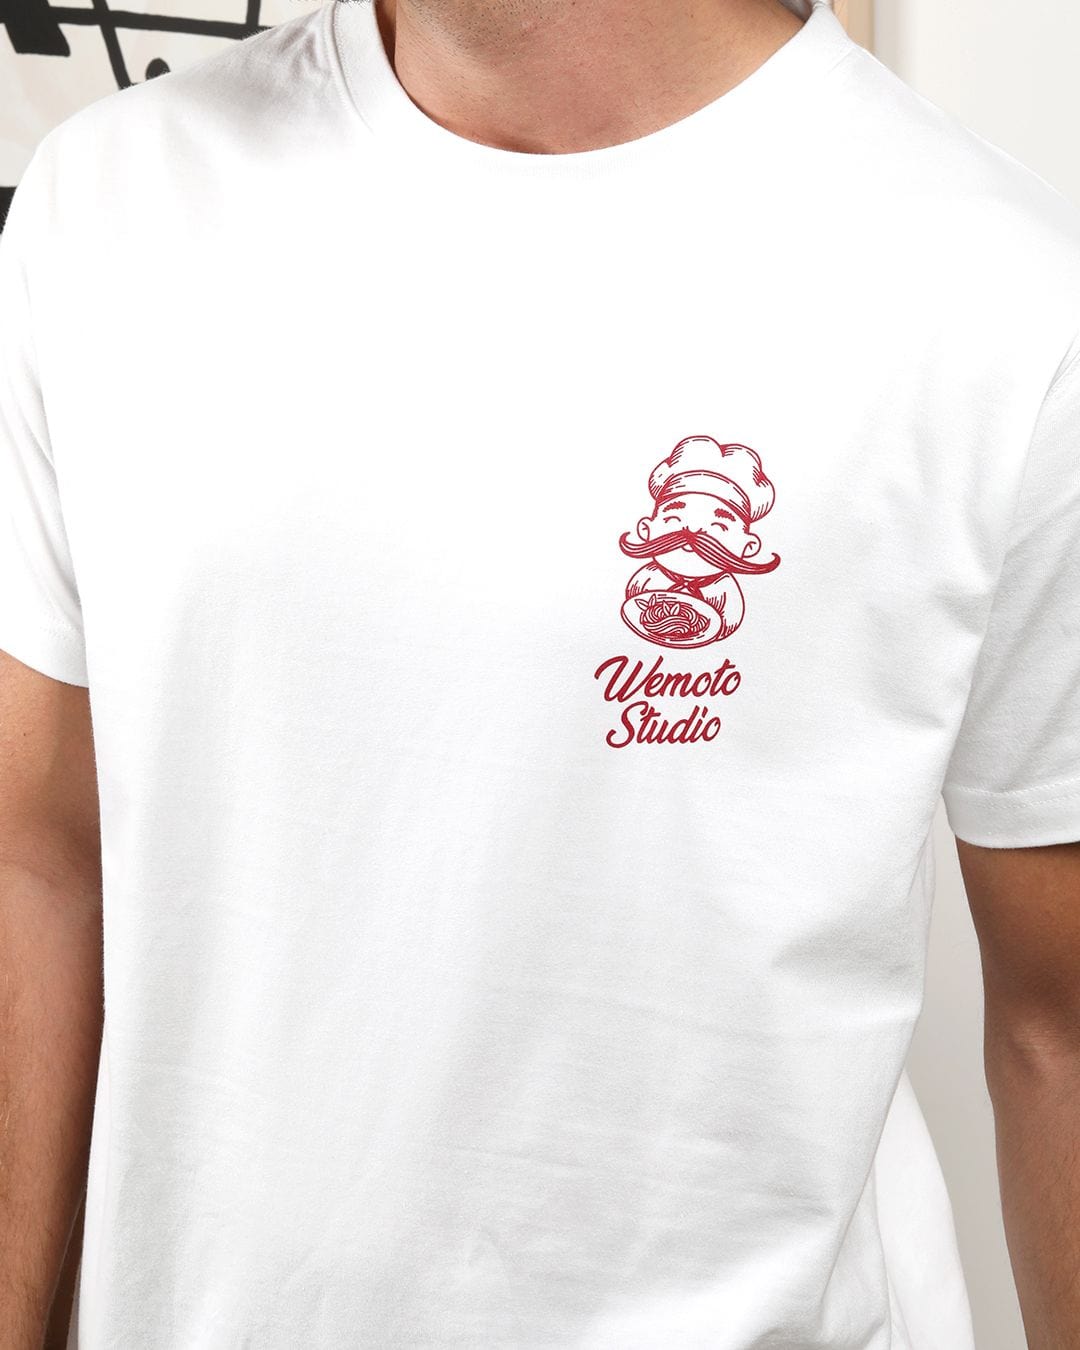 Wemoto T-shirt Delicioso Tee - Printed T-Shirt White